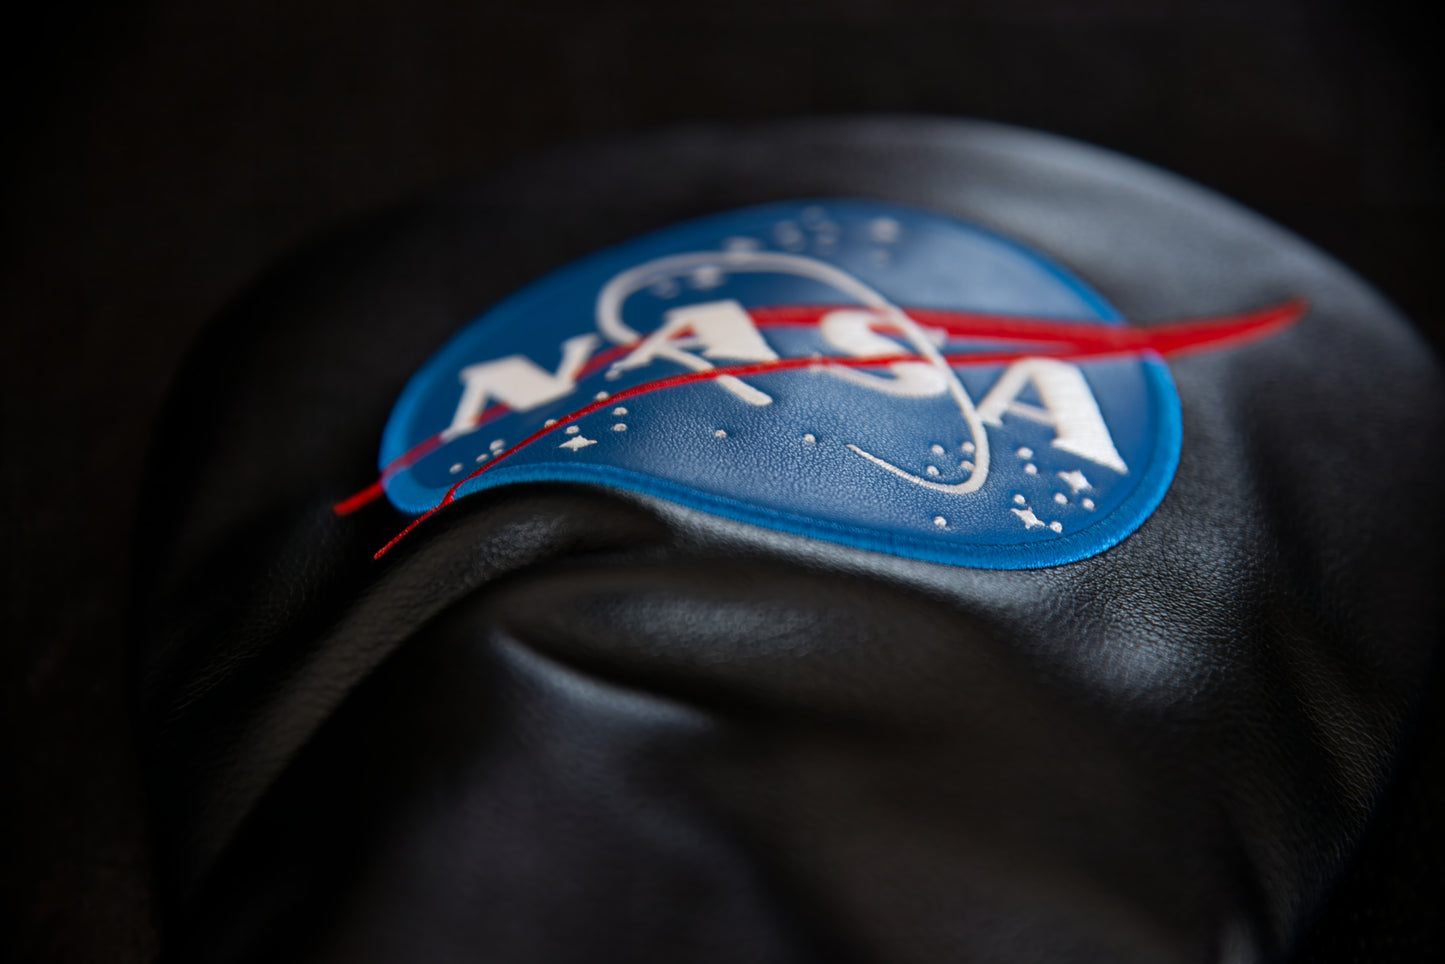 Headcover: NASA